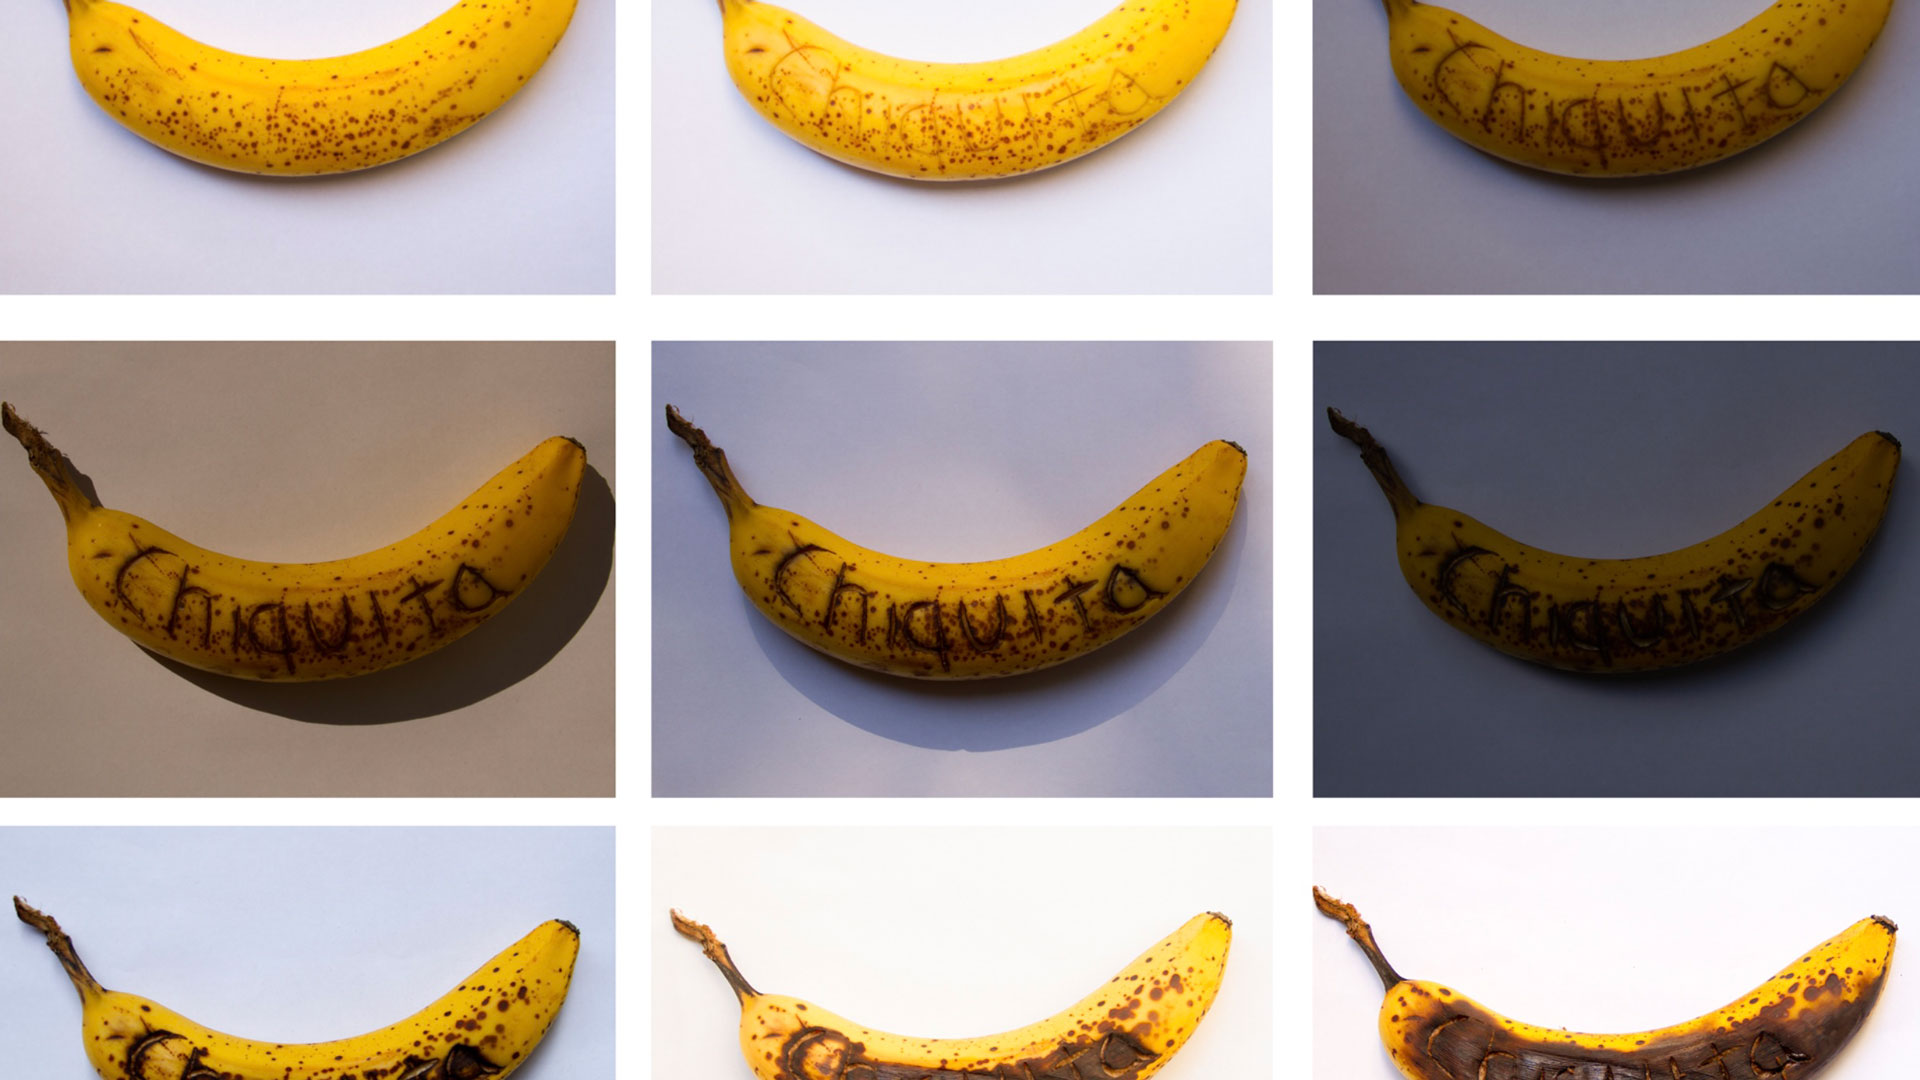 La exposición digital sobre el papel del banano en las identidades latinoamericanas en prensa